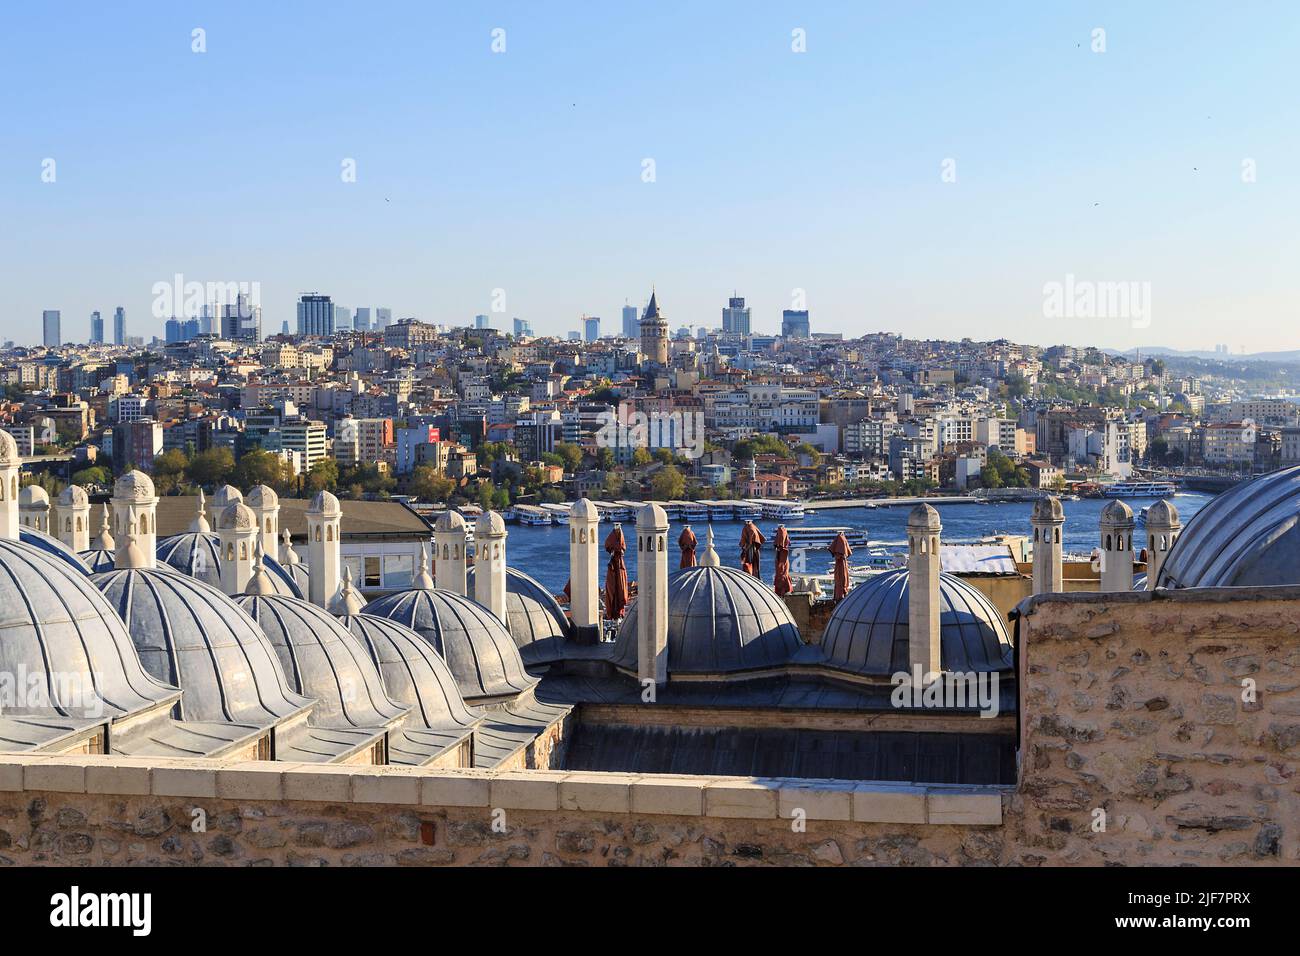 ISTANBUL, TURQUIE - 14 SEPTEMBRE 2017 : c'est une vue aérienne du quartier historique de Galata depuis la rive opposée de la Corne d'Or. Banque D'Images